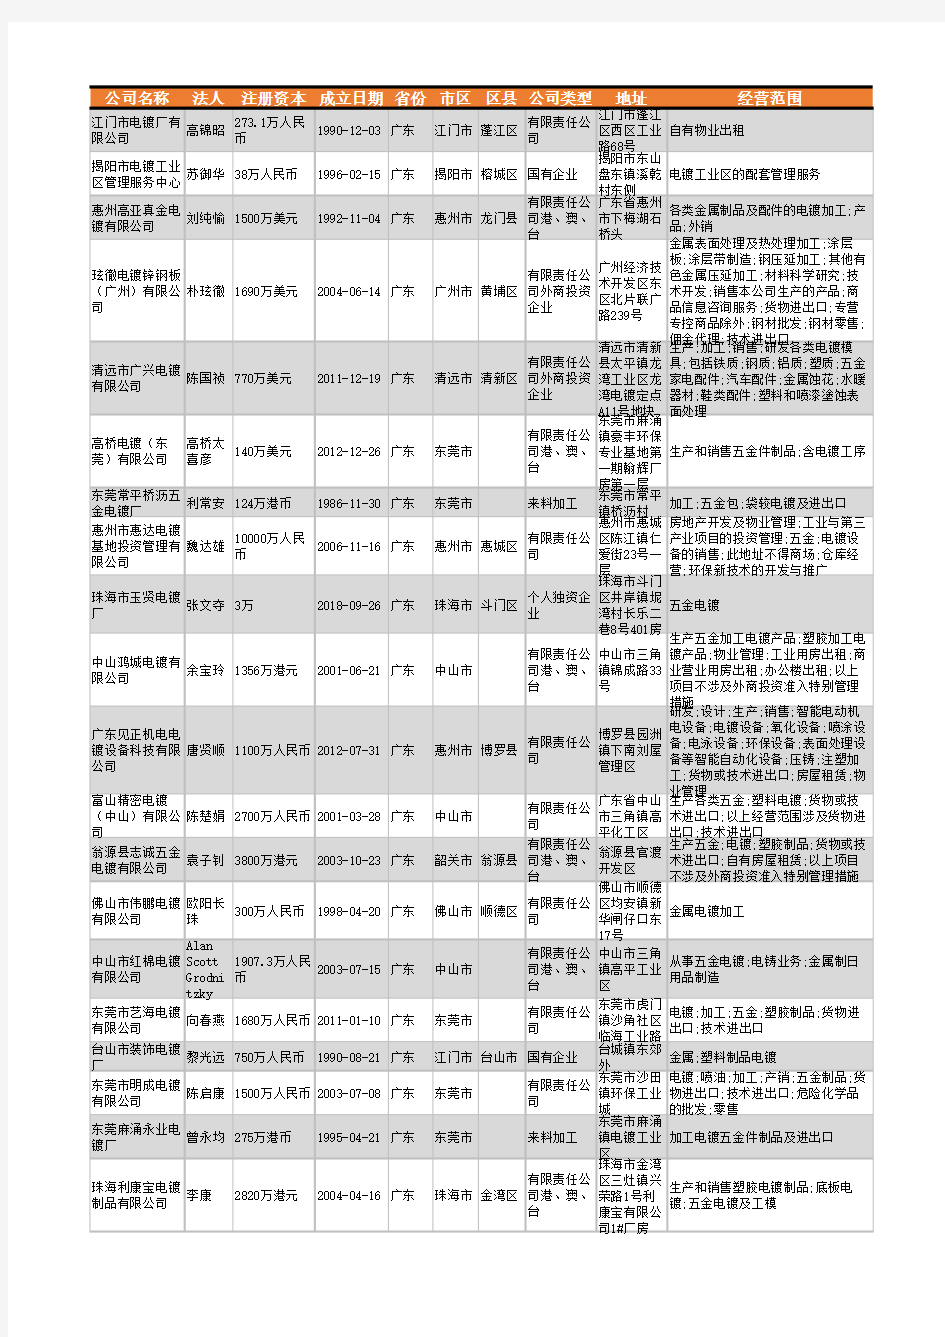 2021年广东省电镀行业企业名录8916家